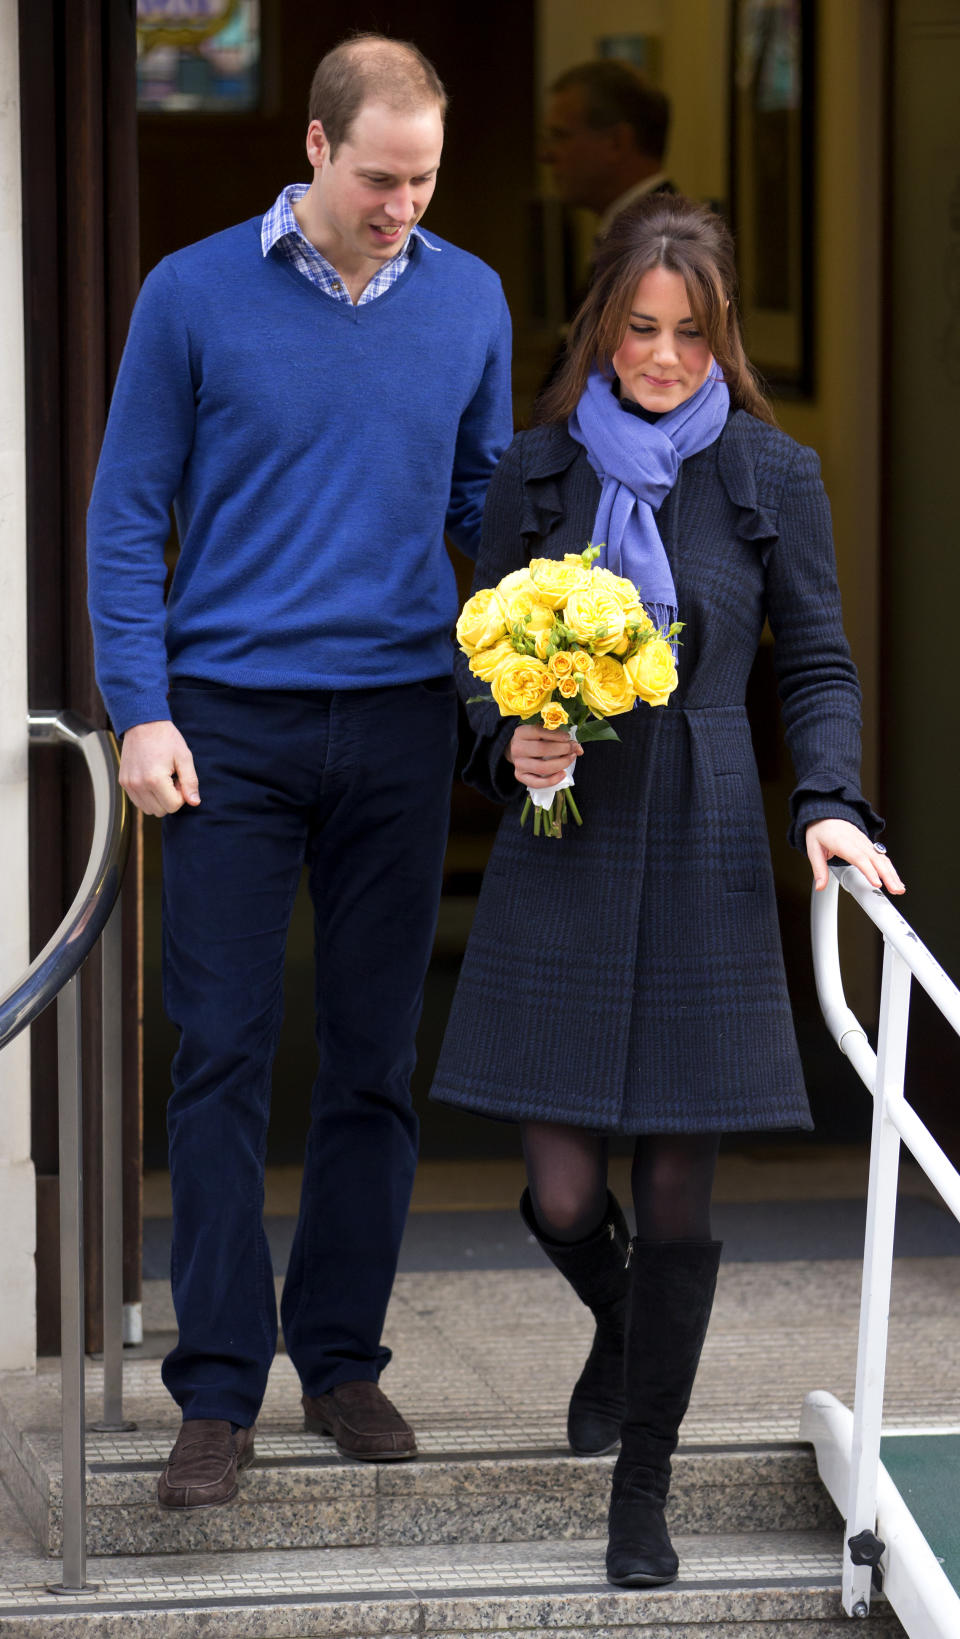 December 6, 2012: Kate Middleton leaves King Edward VII hospital